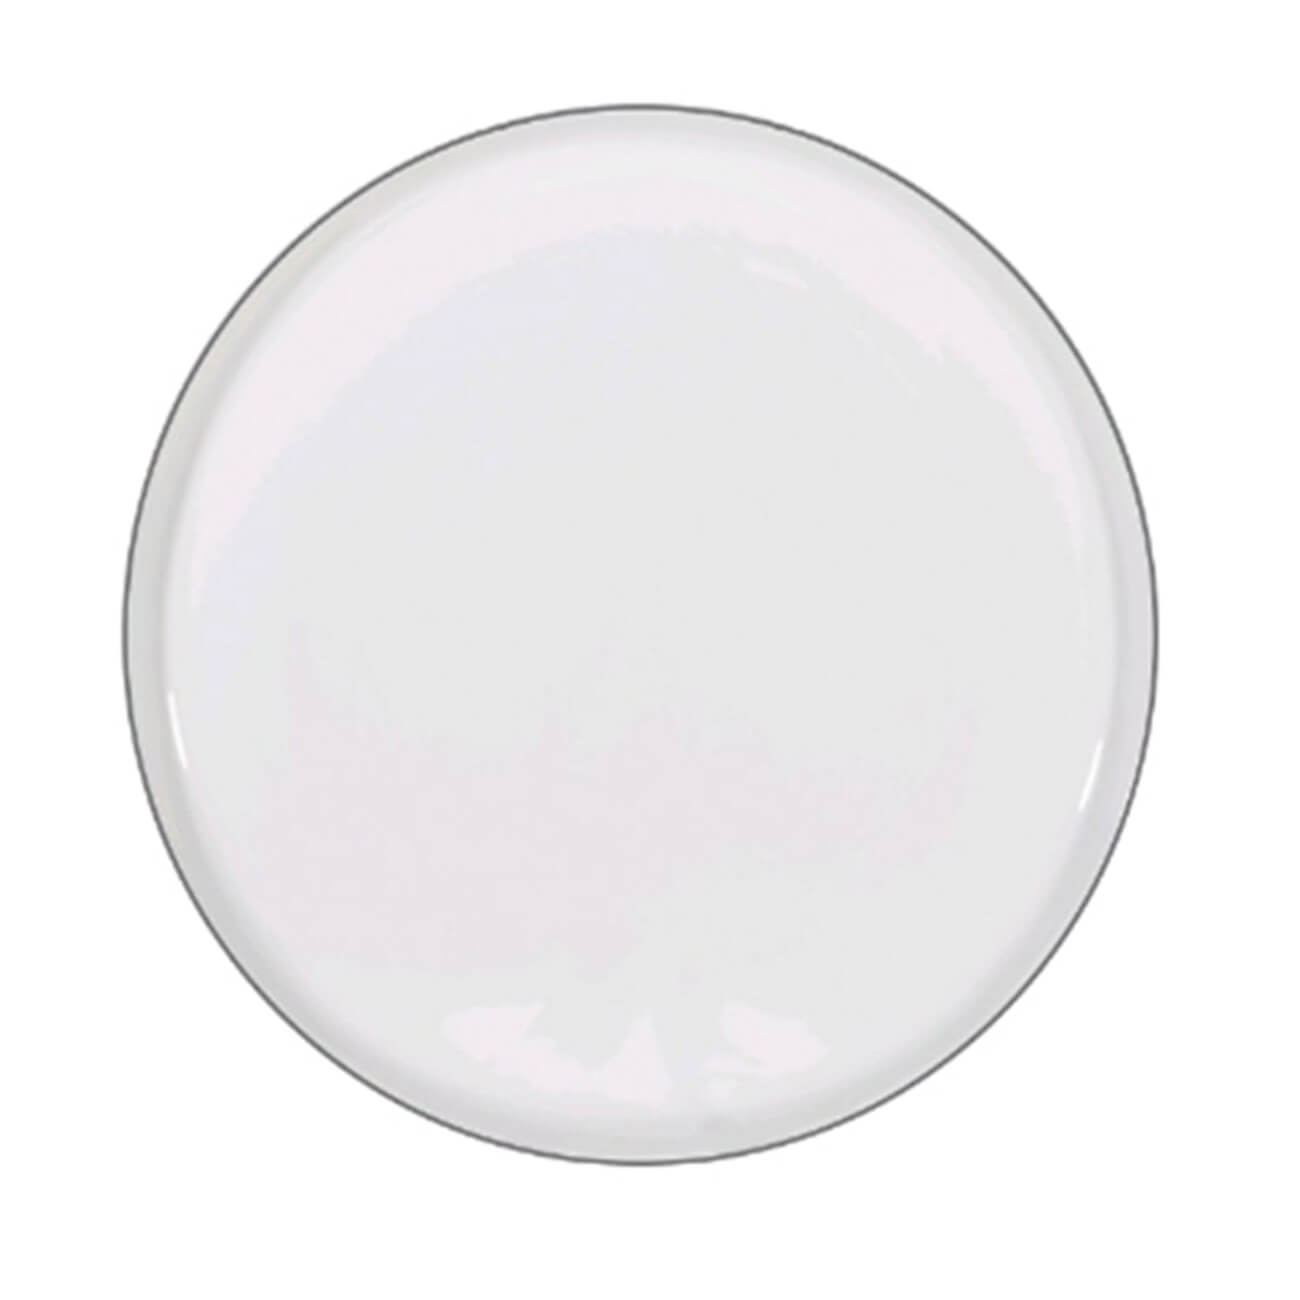 Тарелка десертная, 20 см, 2 шт, фарфор F, белая, Ideal silver - фото 1